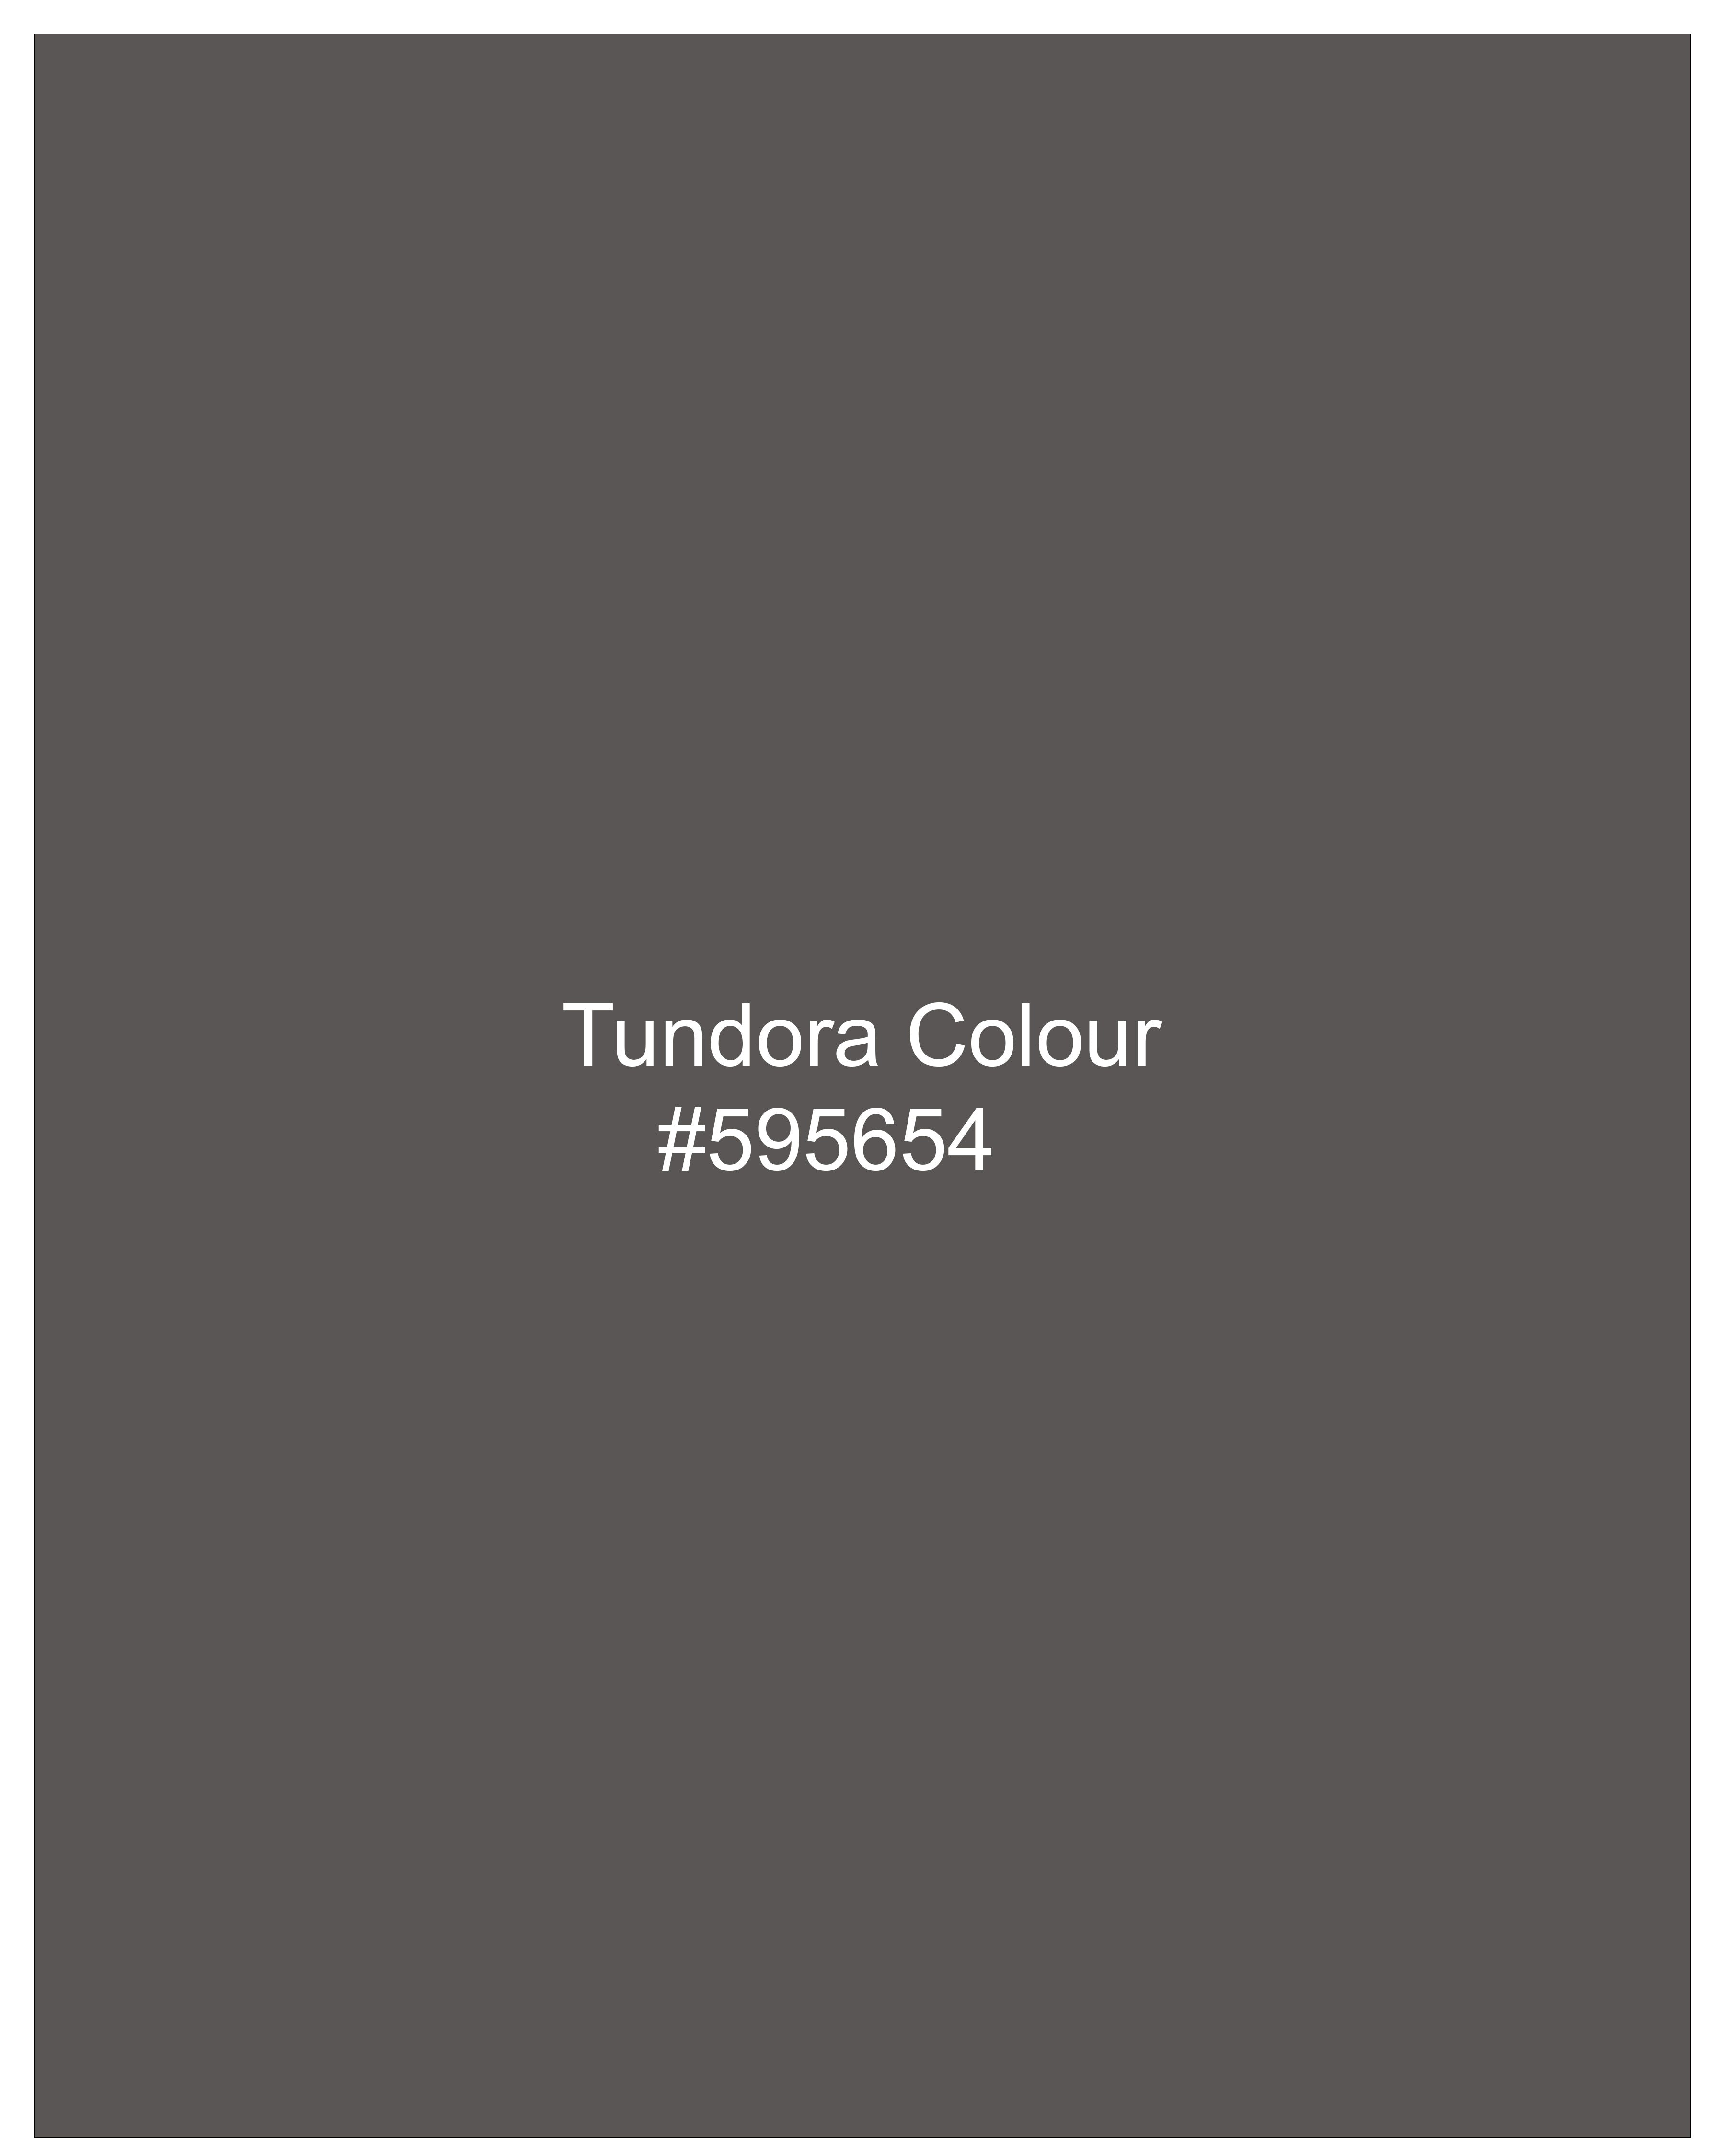 Tundora Grey Textured Pant T2276-28, T2276-30, T2276-32, T2276-34, T2276-36, T2276-38, T2276-40, T2276-42, T2276-44